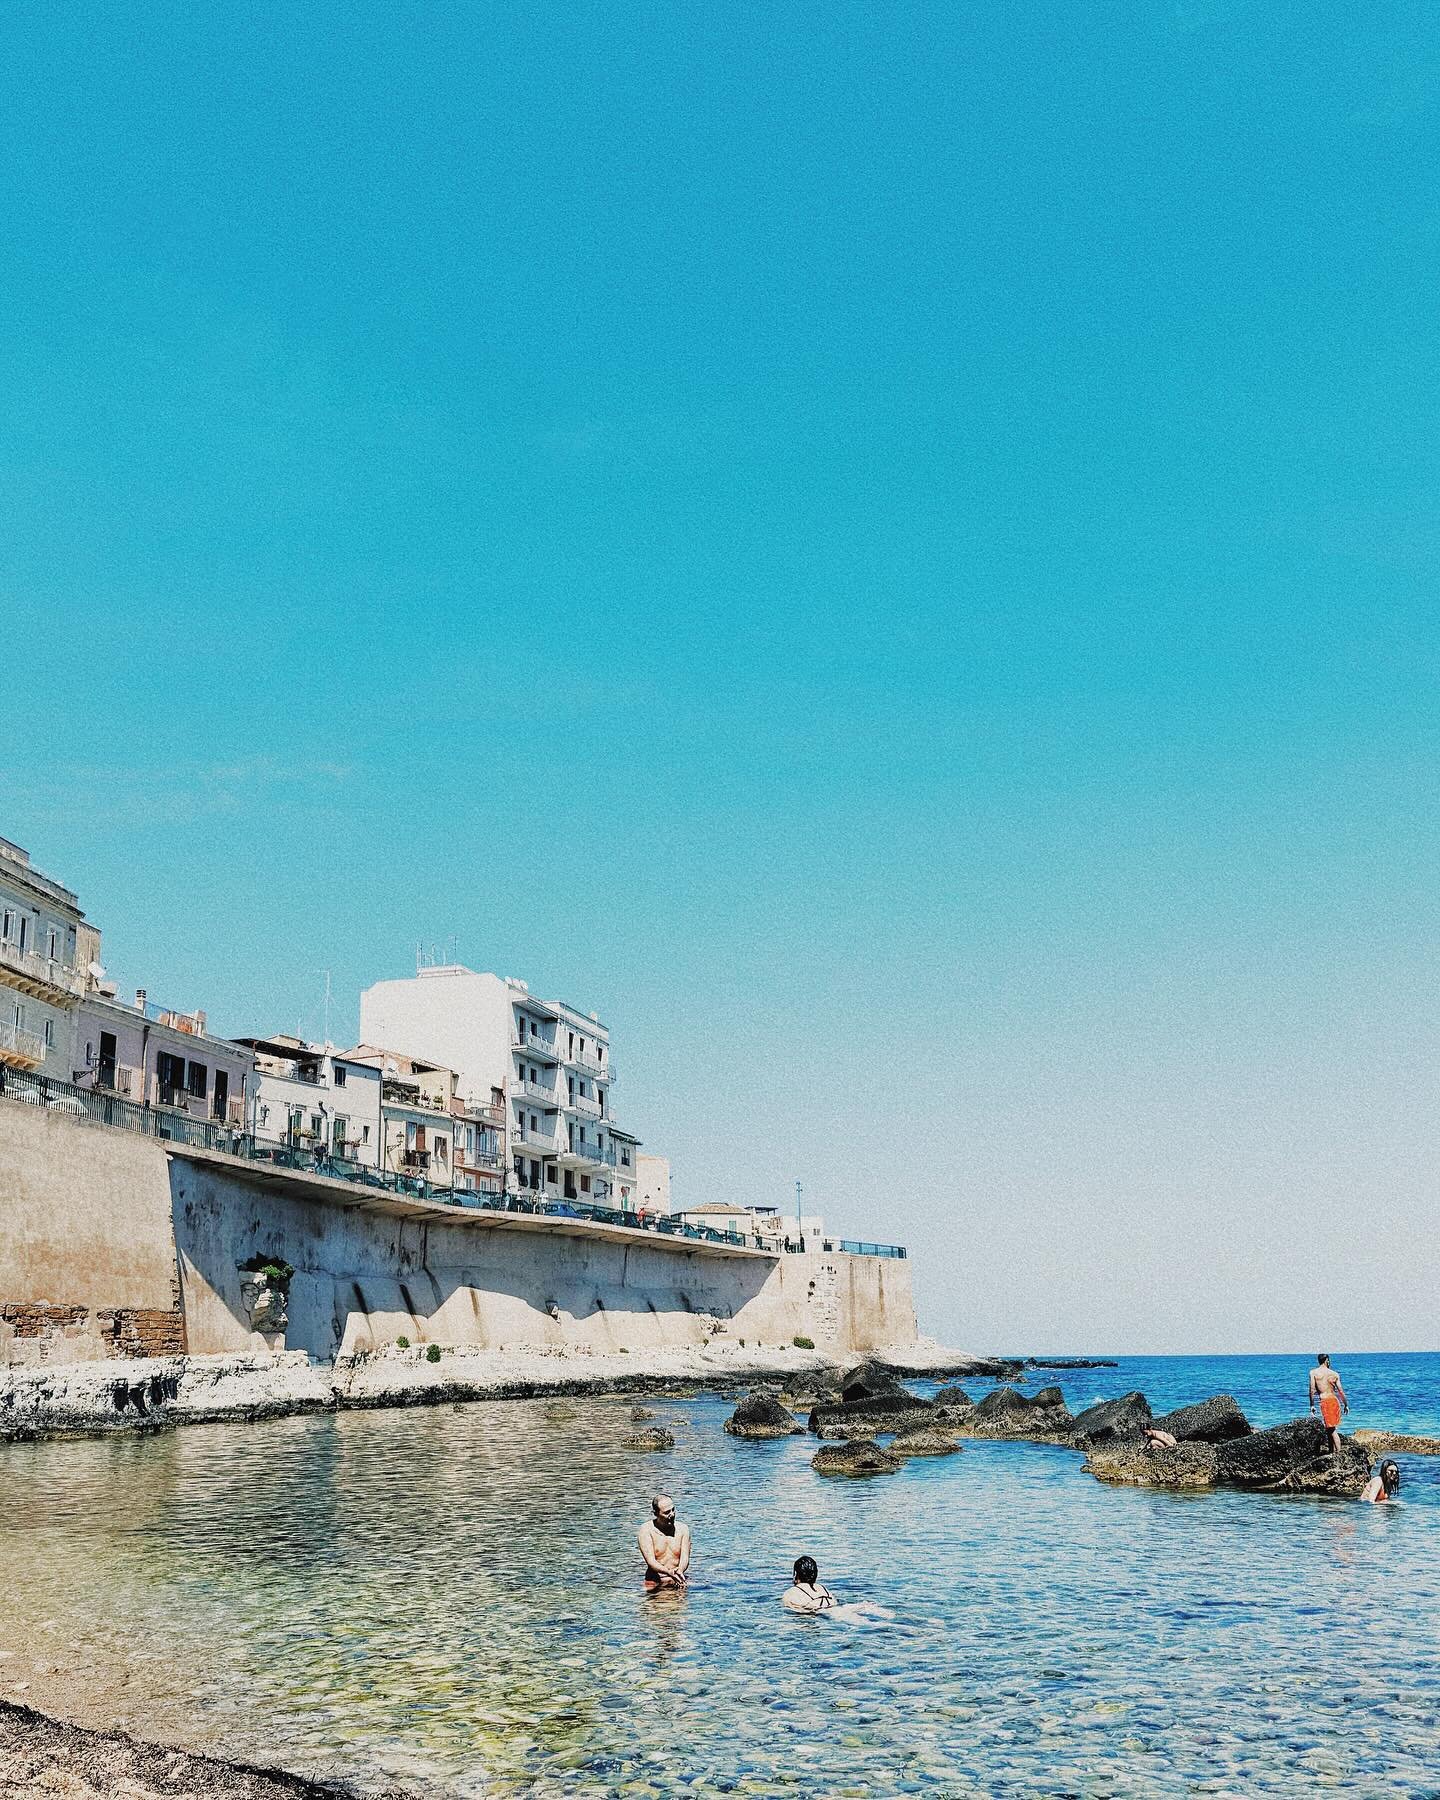 Sicilia // 🇮🇹

__
#sicilia #holidays #trip #photography #italia #dolcevita